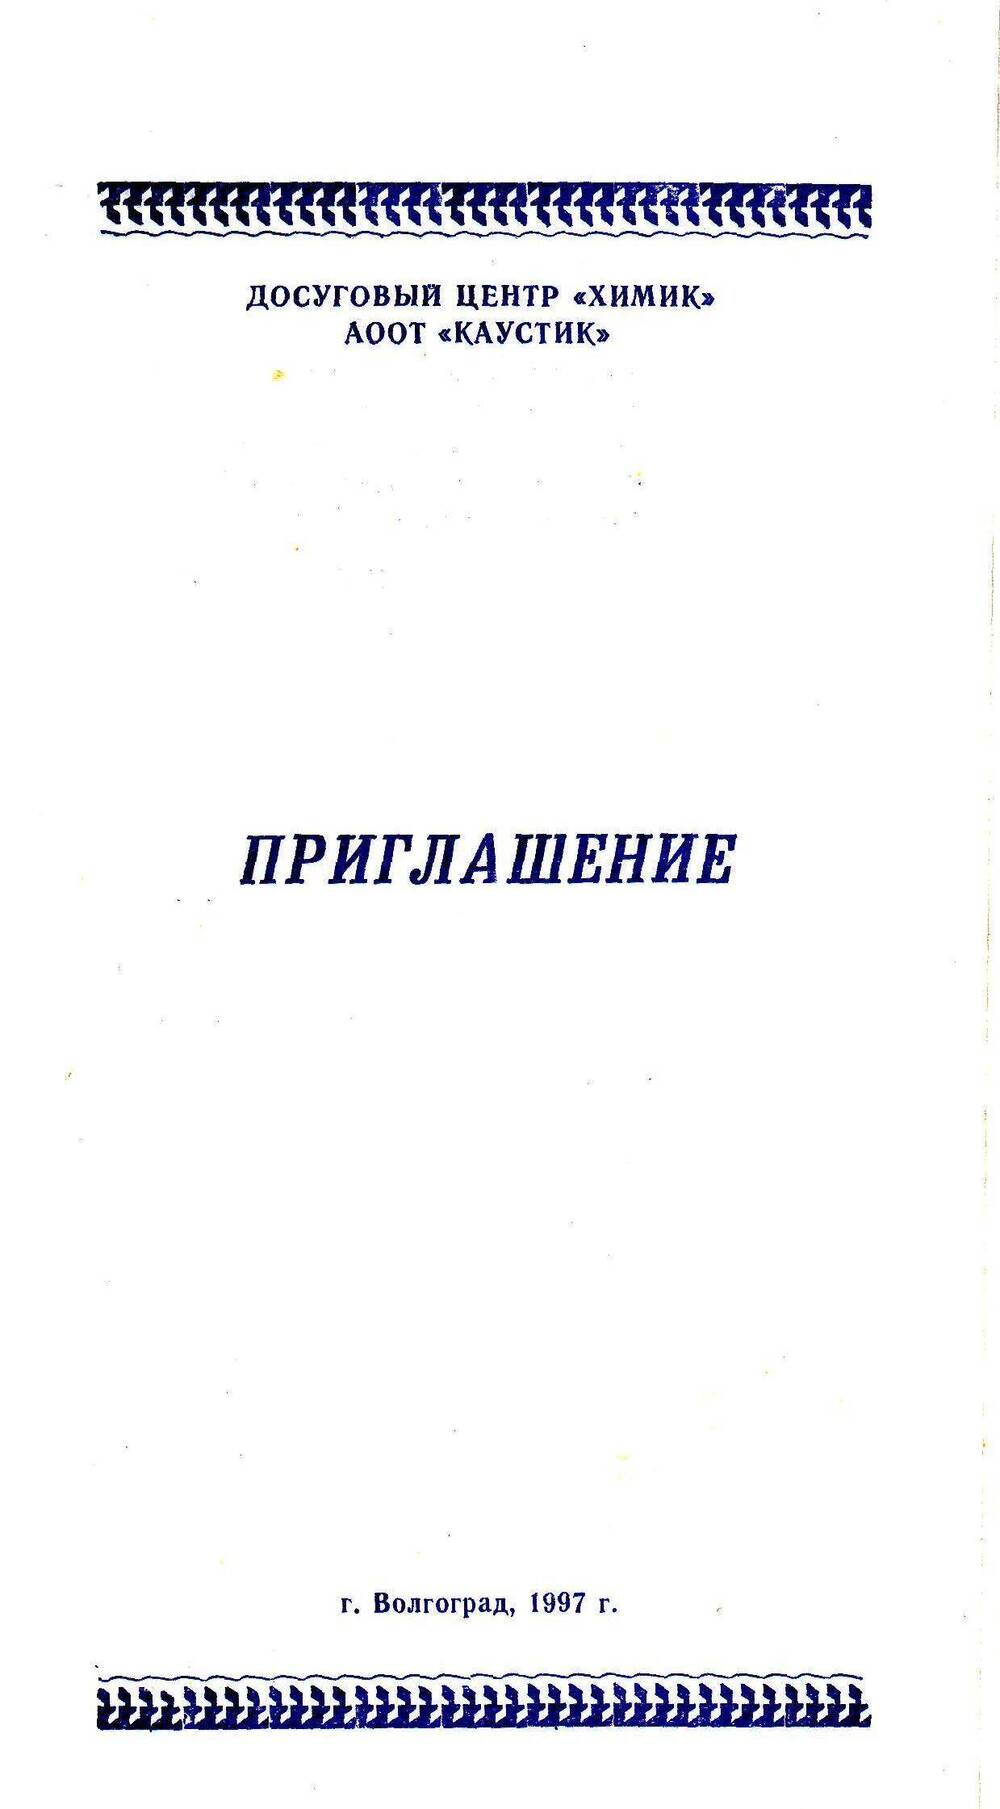 Приглашение Костиной на презентацию книги «Город на канале»1997 г.